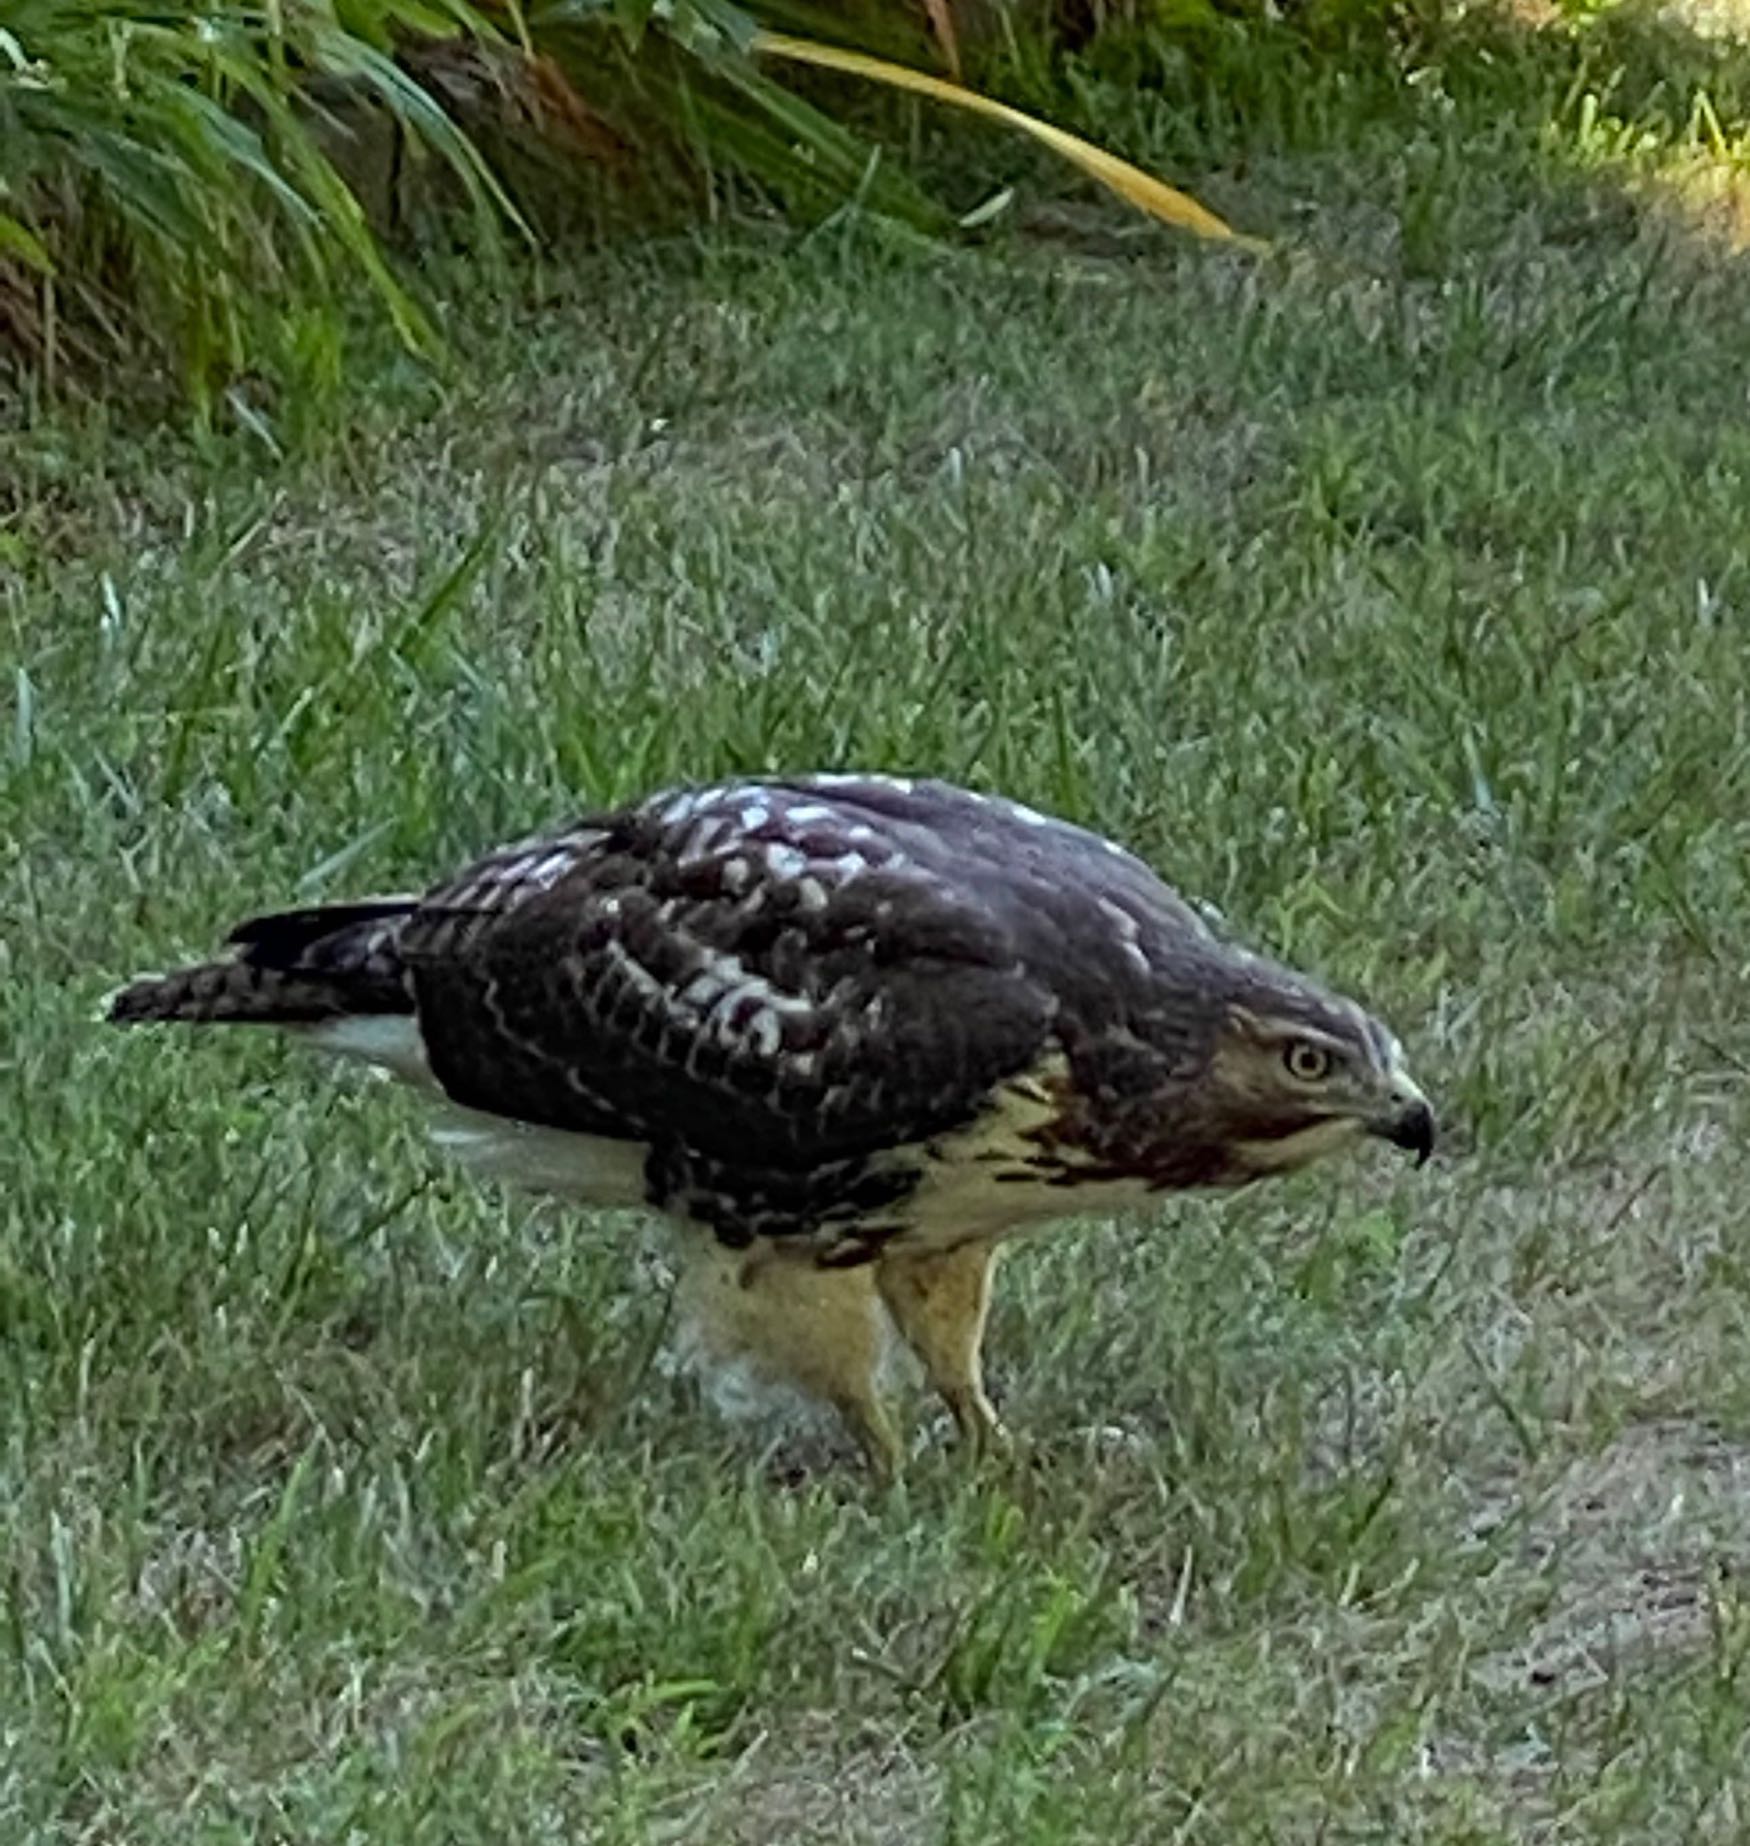 It's the weekend! Number 223,Hawk in My Backyard